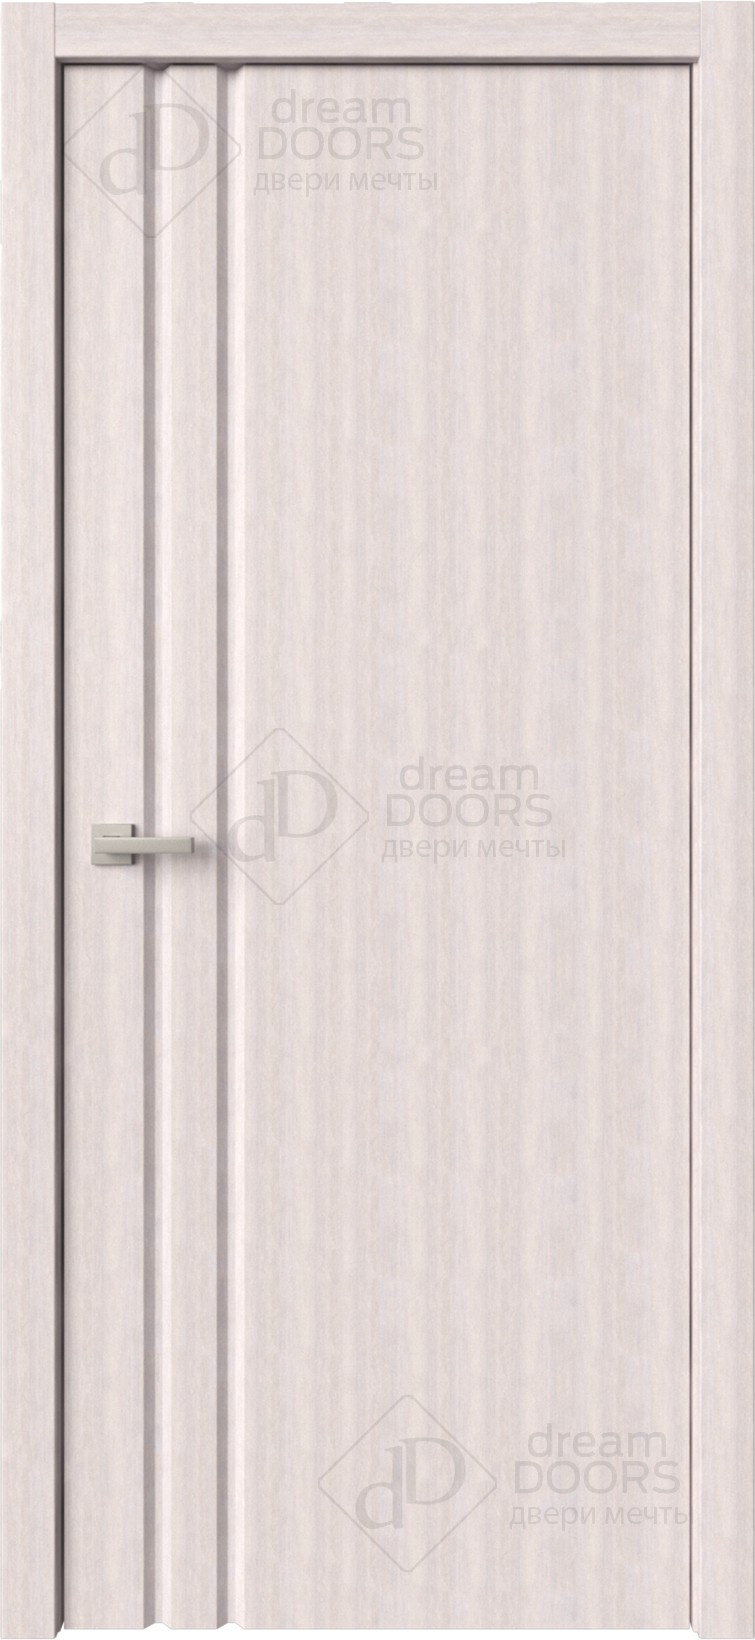 Dream Doors Межкомнатная дверь Стиль 1 узкое ПГ, арт. 6269 - фото №6